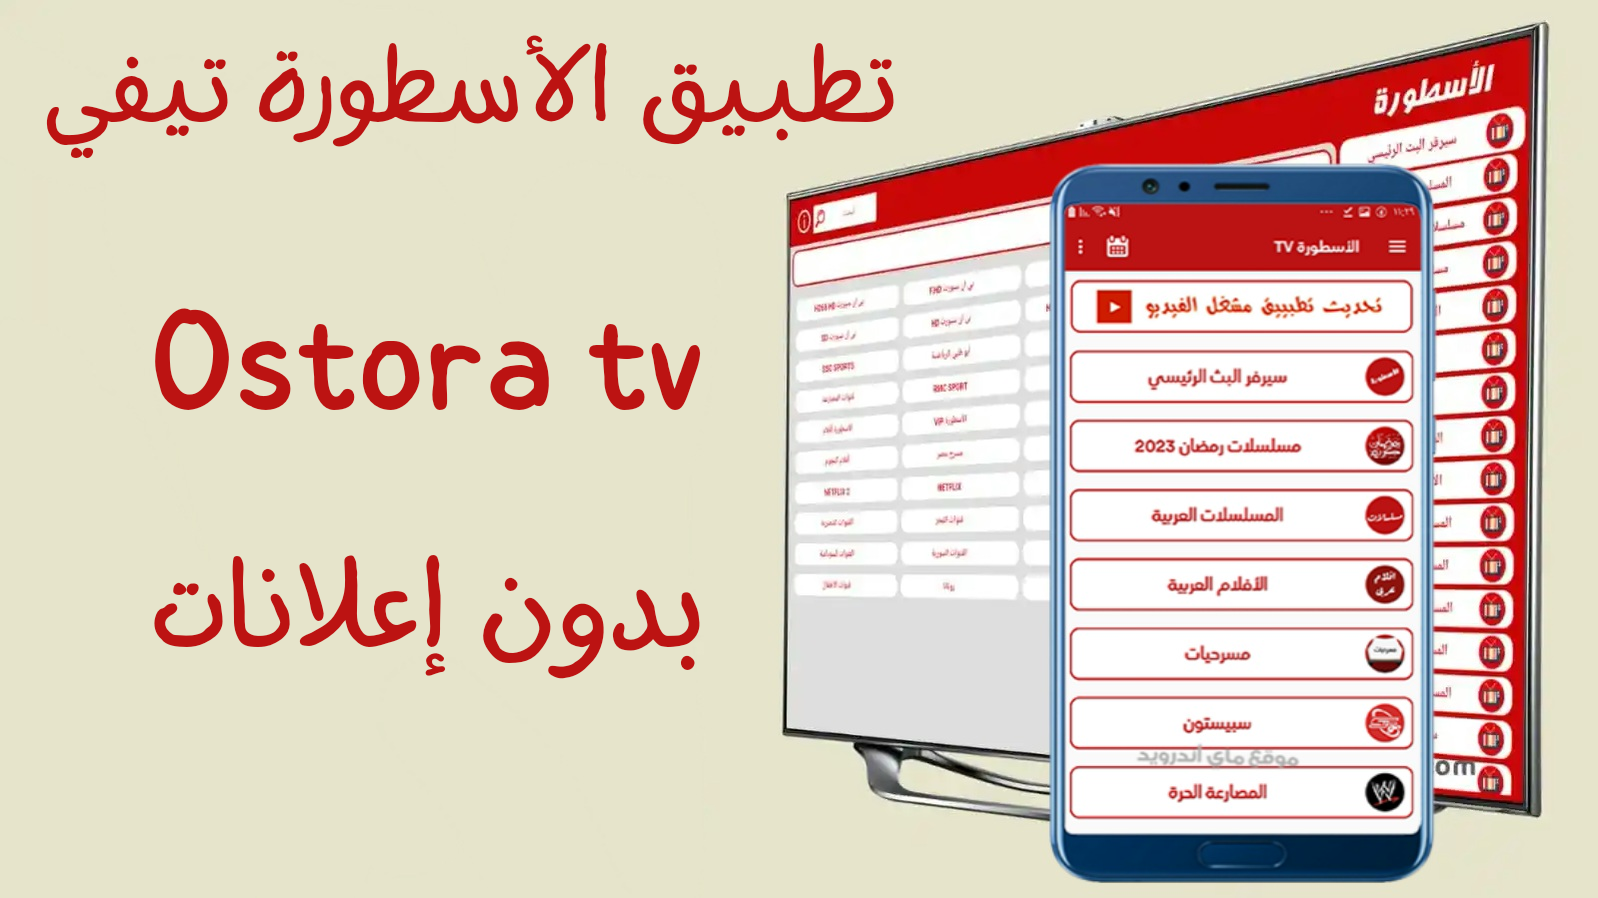 يعد Ostora TV التطبيق المفضل للترفيه أثناء التنقل. جاهز للتنزيل؟ سنوضح لك كيفية تحميل تطبيق Ostora live